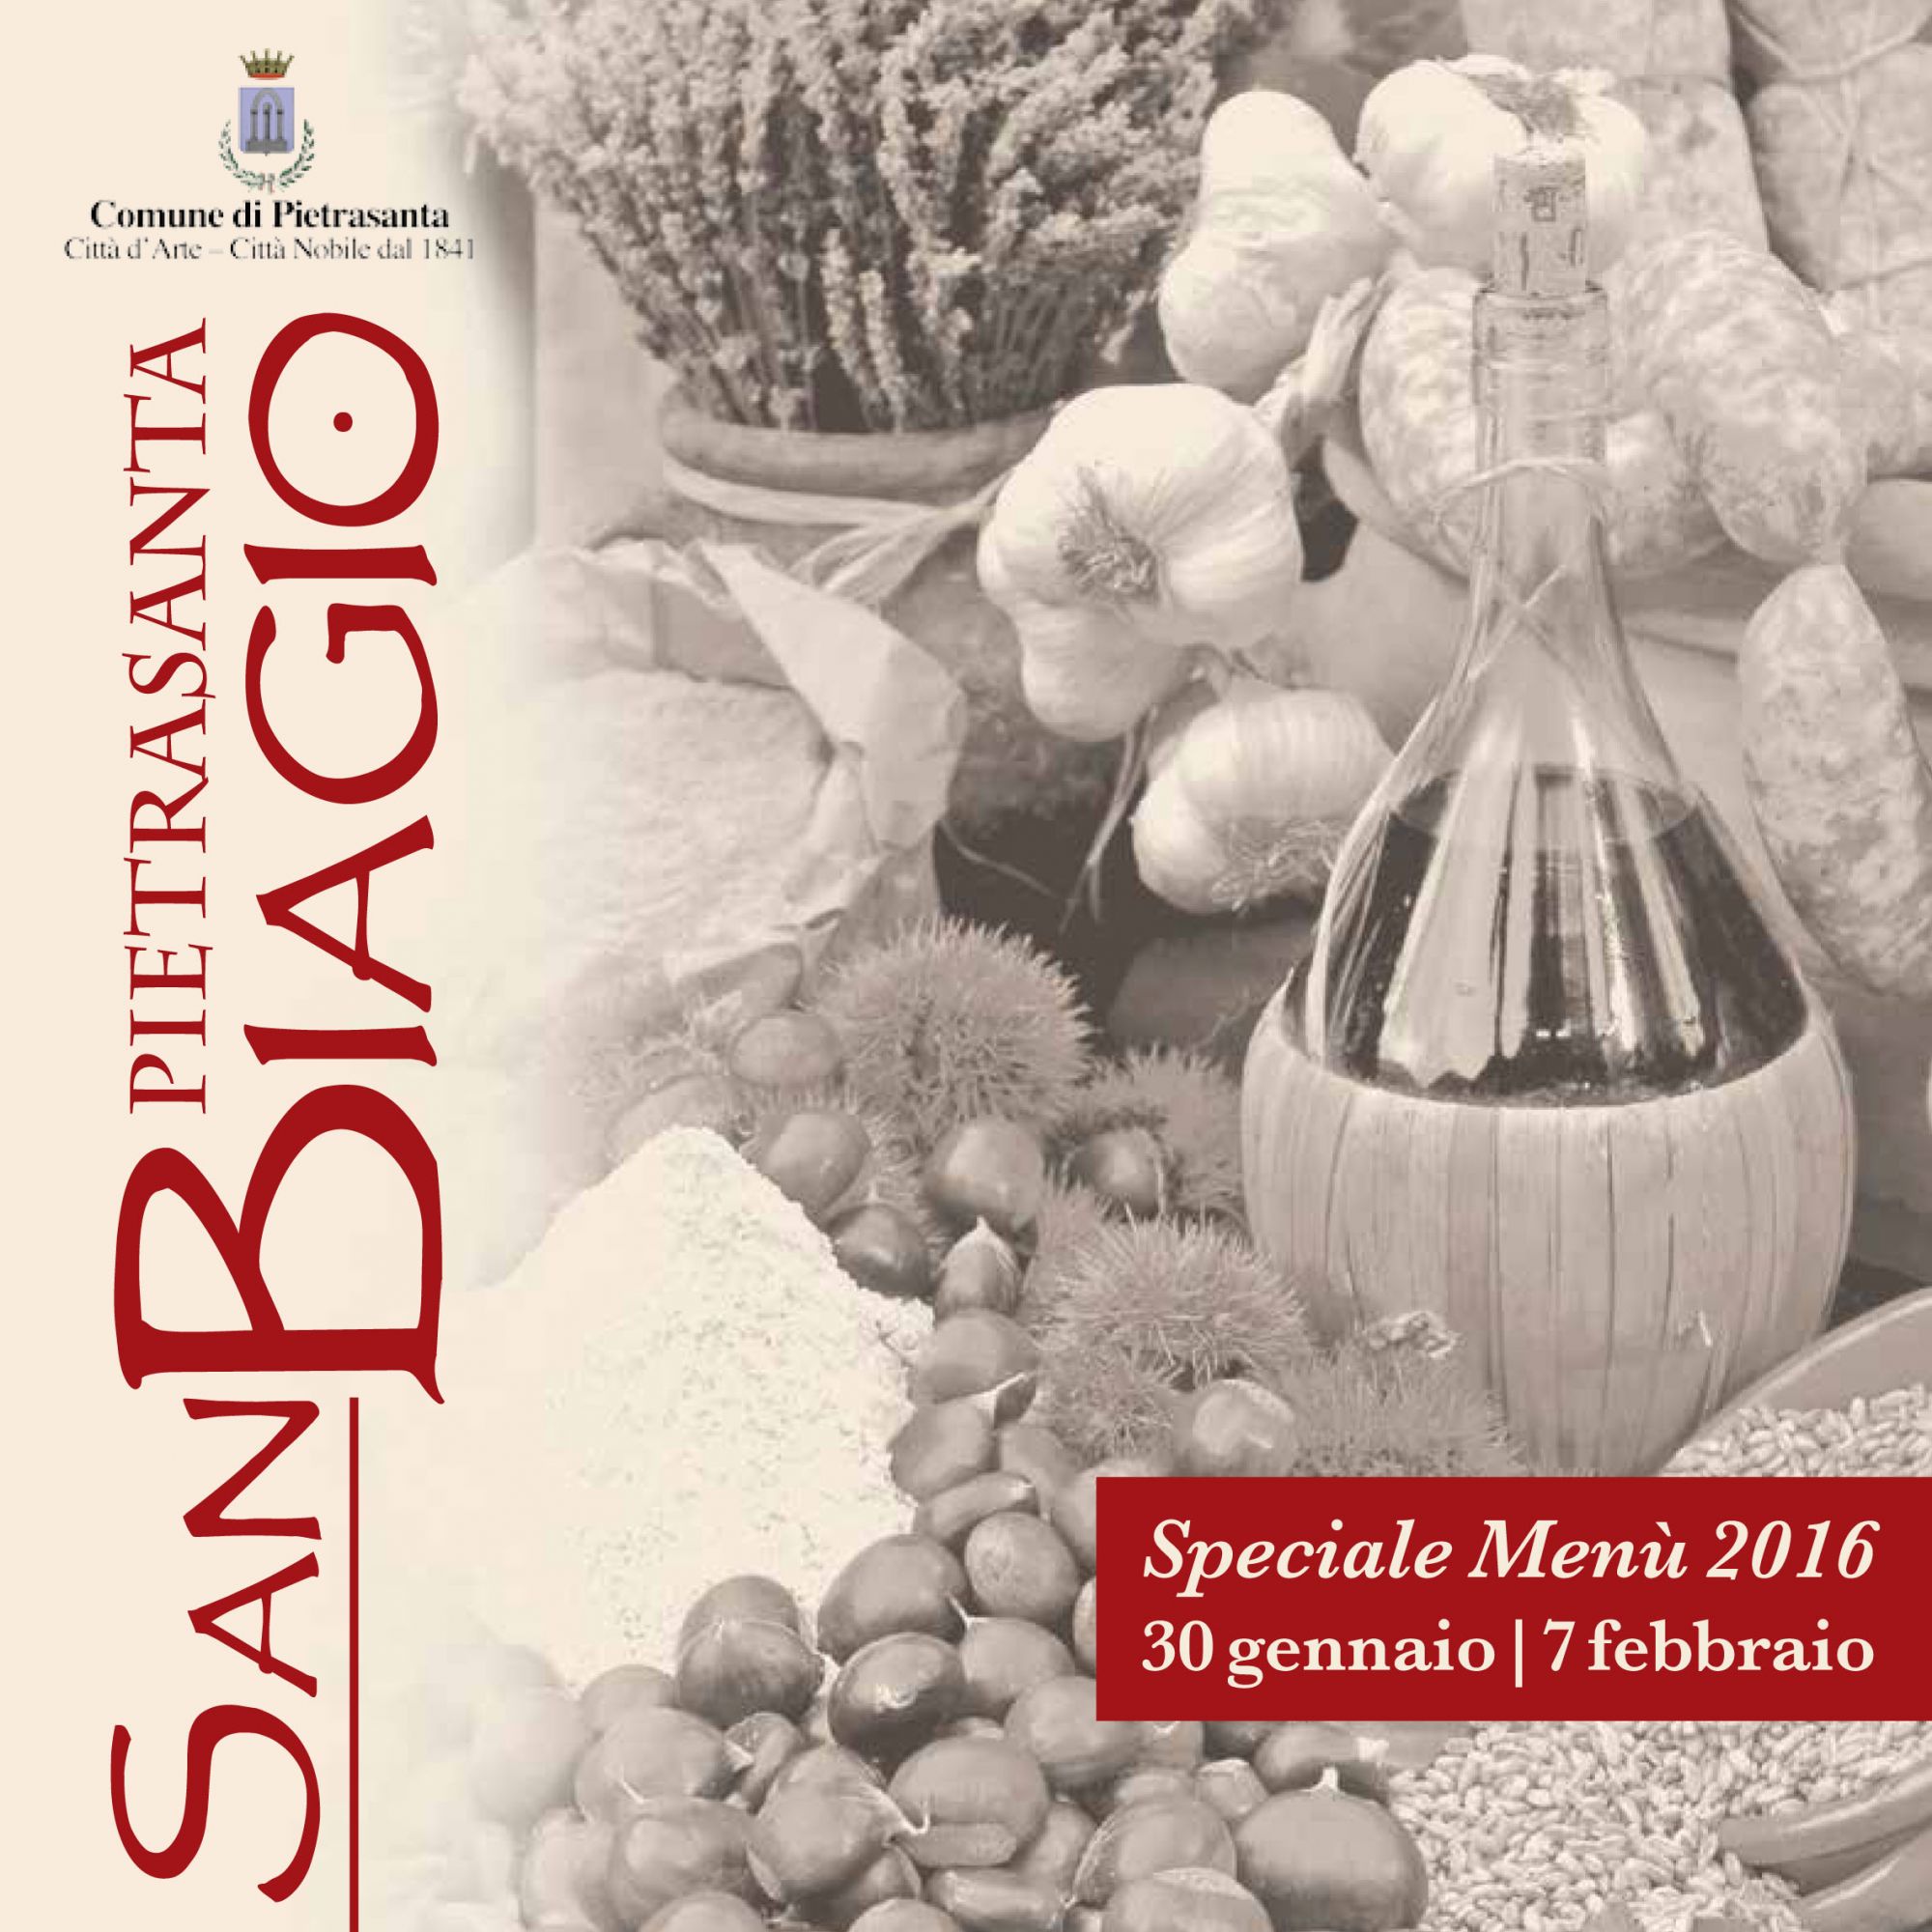 Arte, cibo e tradizioni: 29 menù per la festa di San Biagio a Pietrasanta